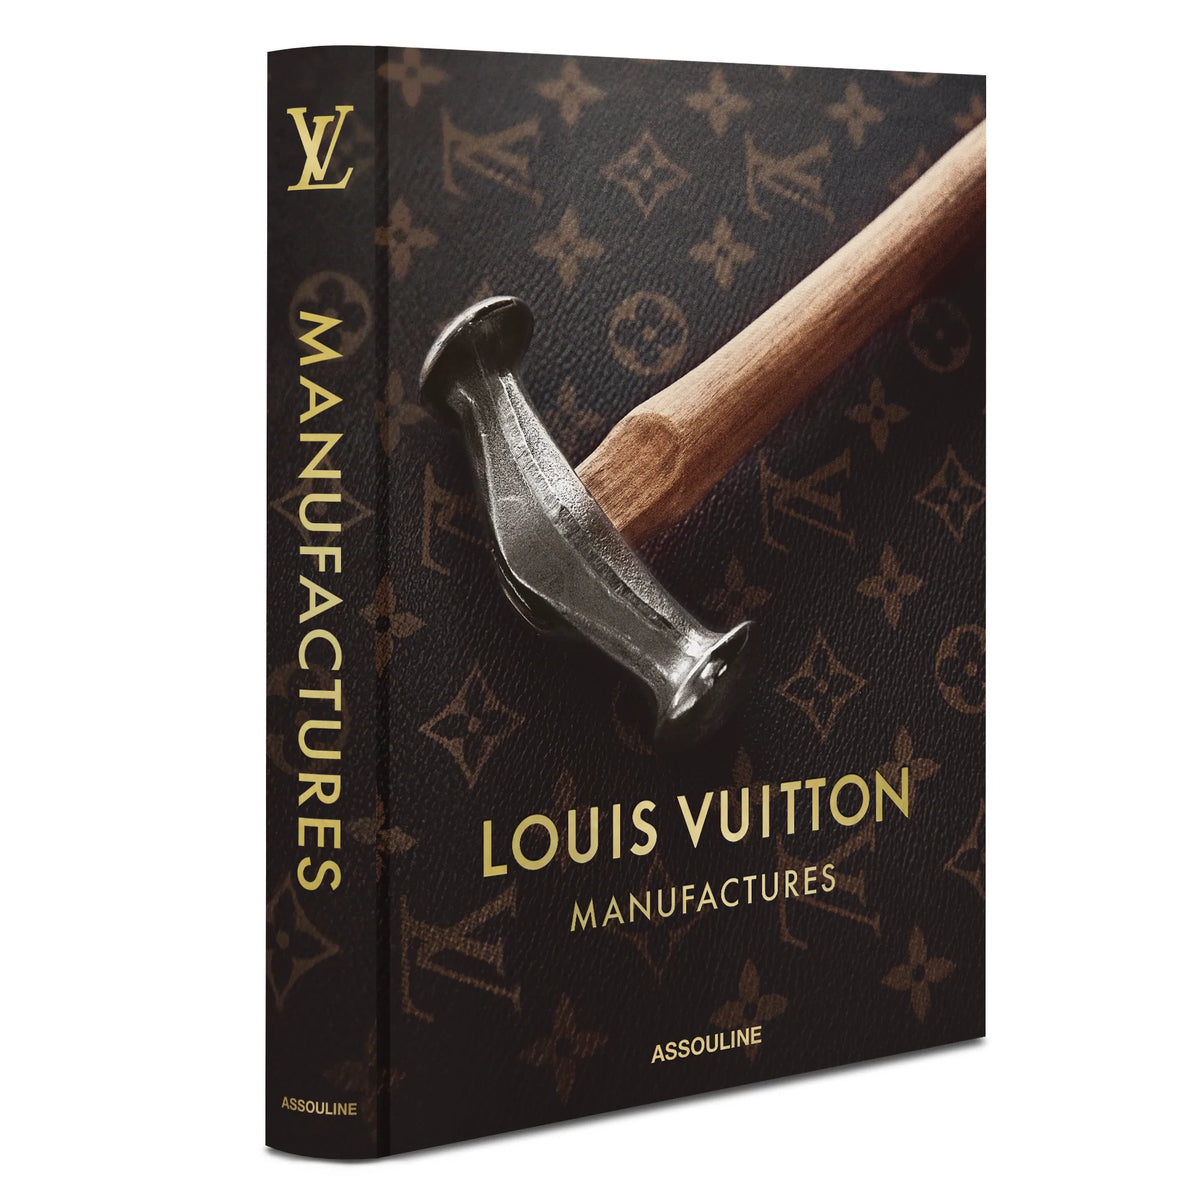 Louis Vuitton began as a lowly apprentice